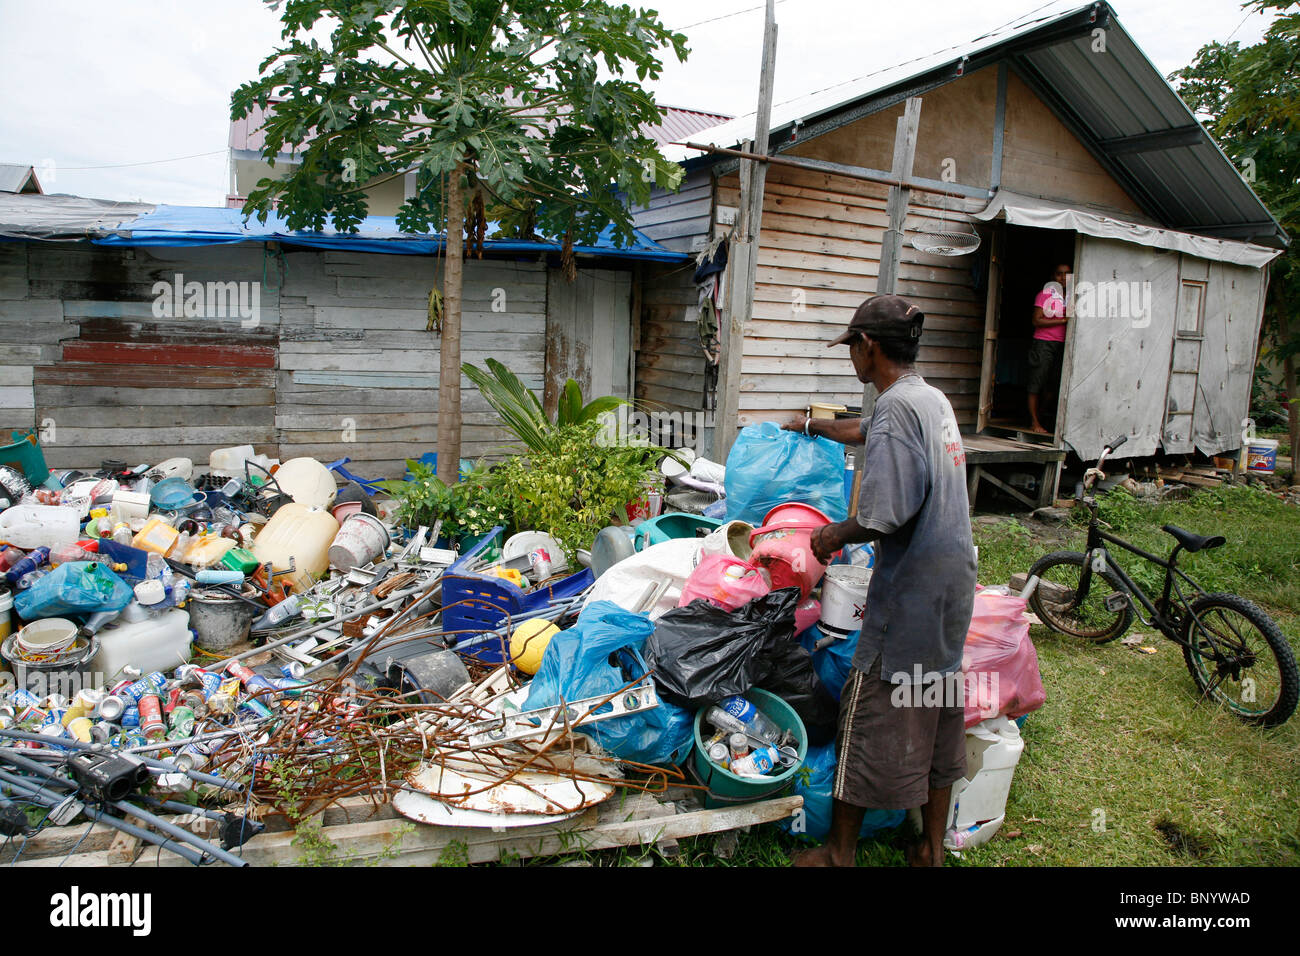 Painet kc4428 Casa indonesia sofyan Mohammed Yusuf un reciclador de basura y la ordenación de nuevos beneficiarios de crs recycables monikeun Foto de stock